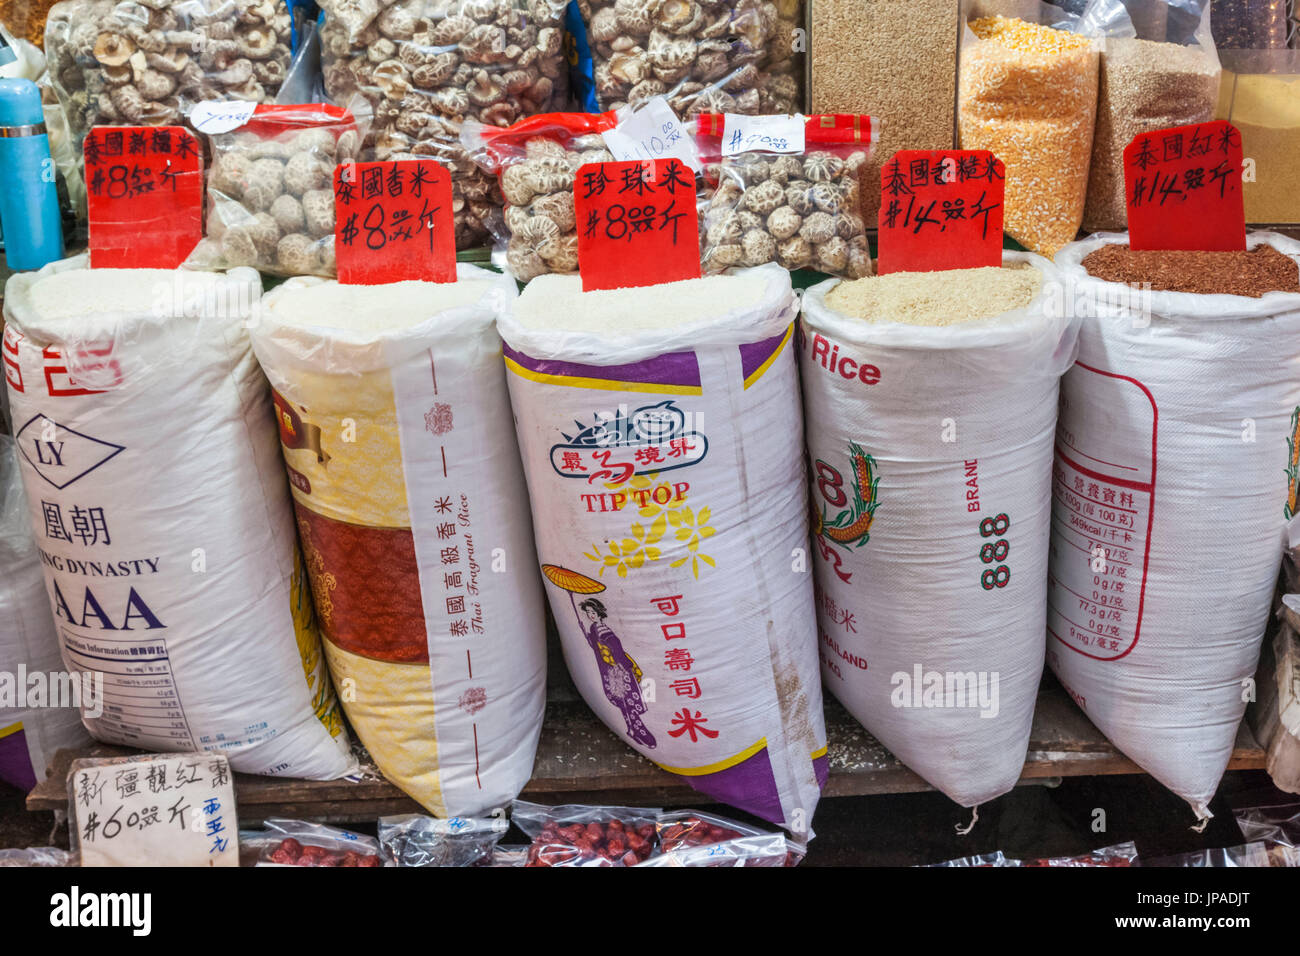 China, Hong Kong, Food Store Display of Rice Stock Photo